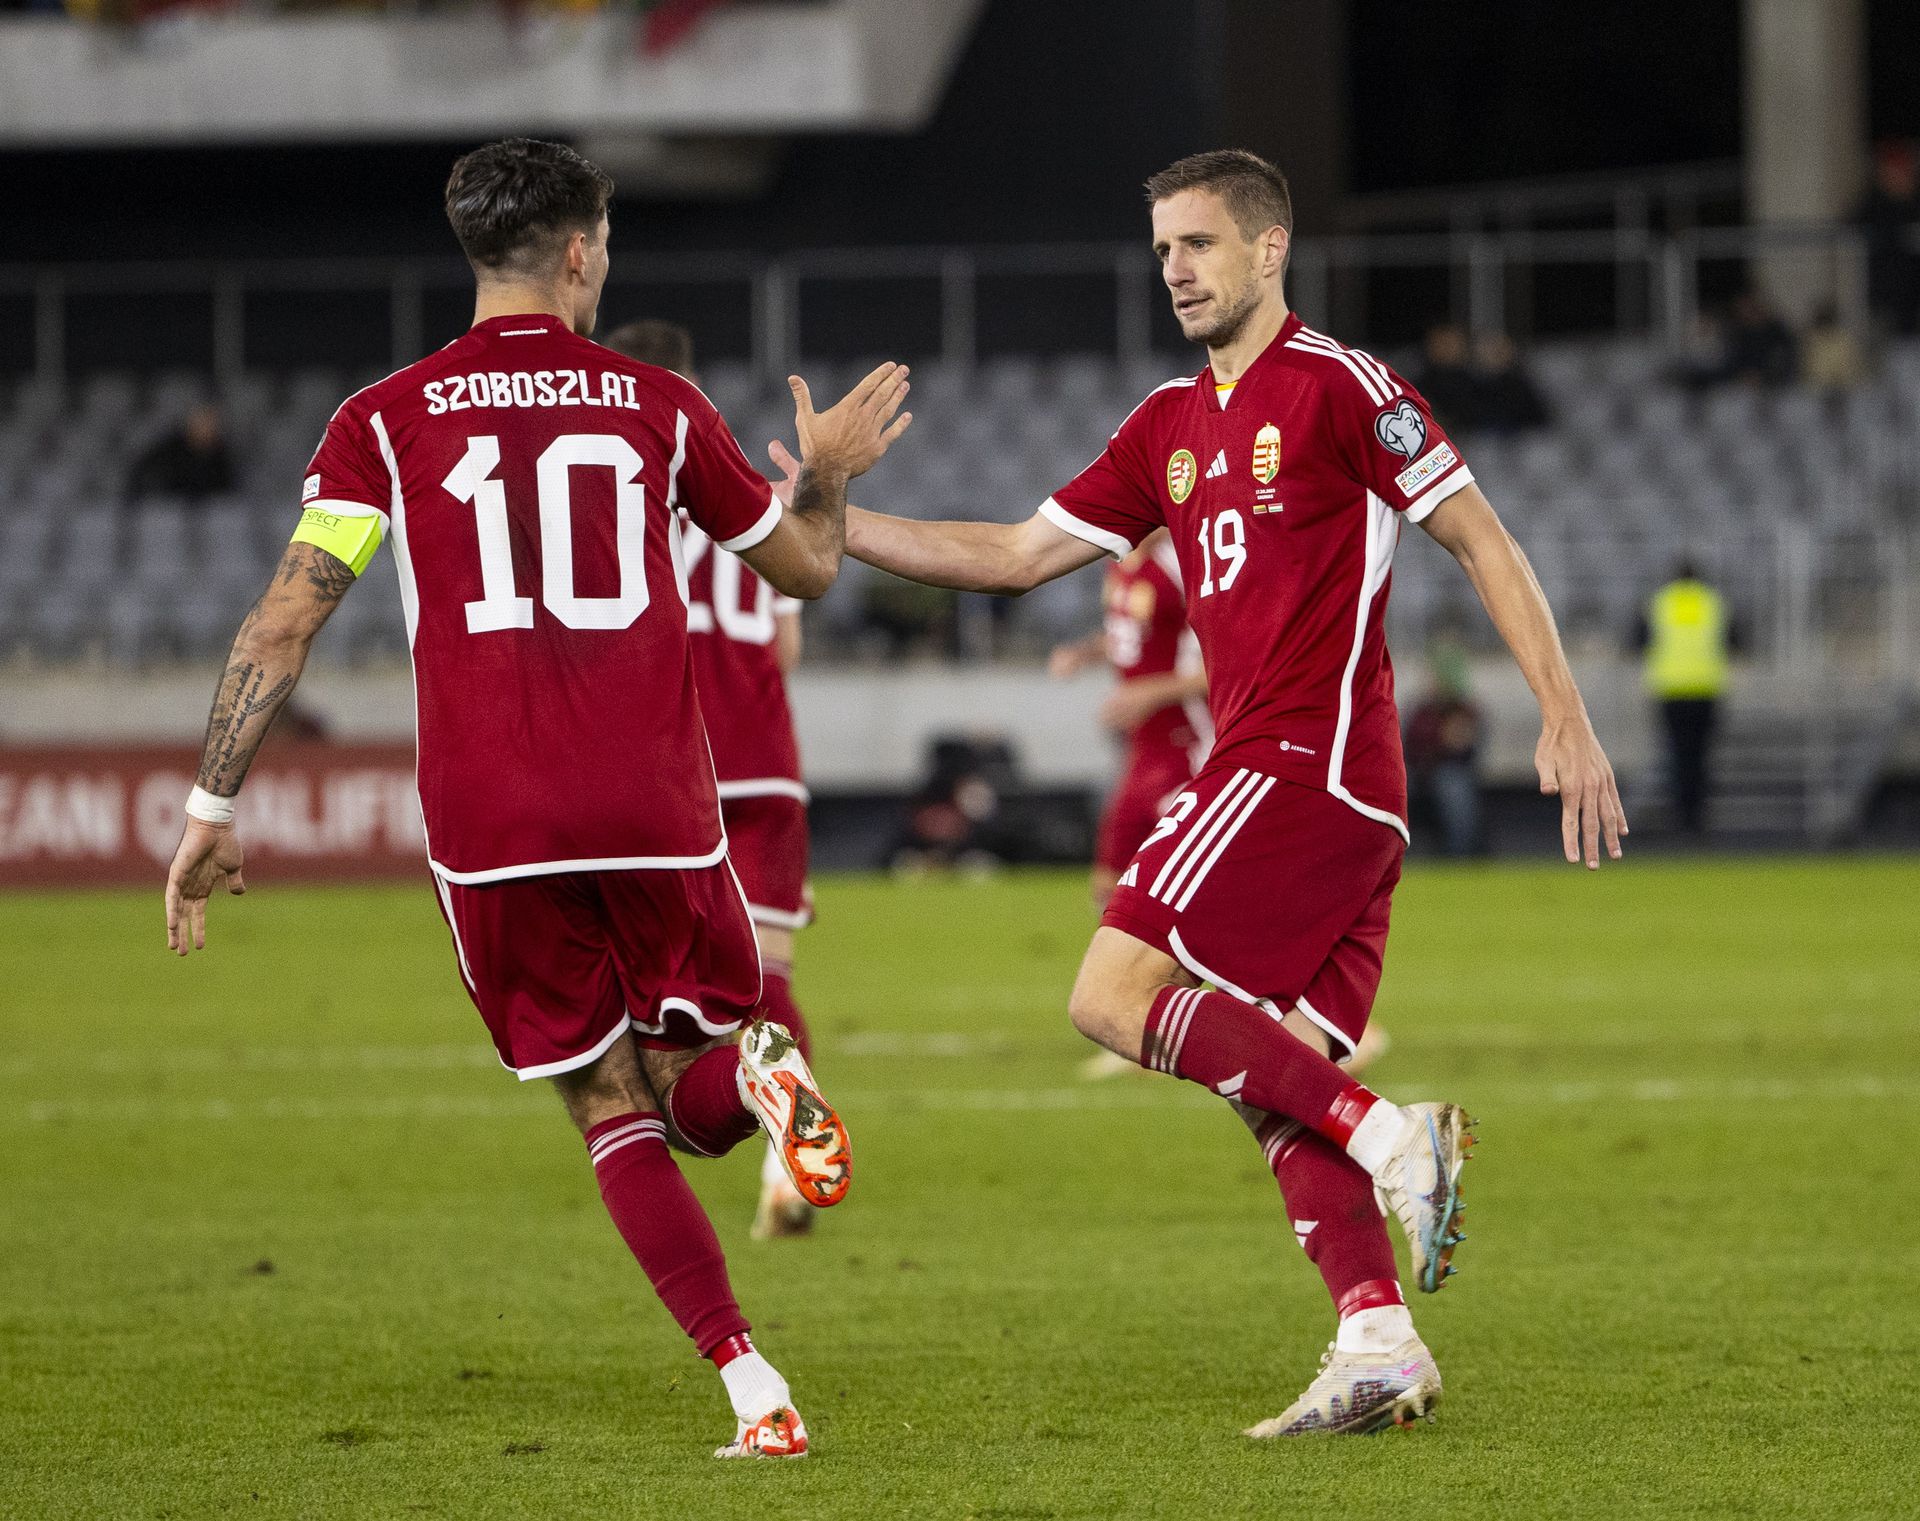 Kaunasban Szoboszlai Dominik és Varga Barnabás is elégedett lehetett, mindketten szereztek egy-egy gólt. (Fotó: Czerkl Gábor)